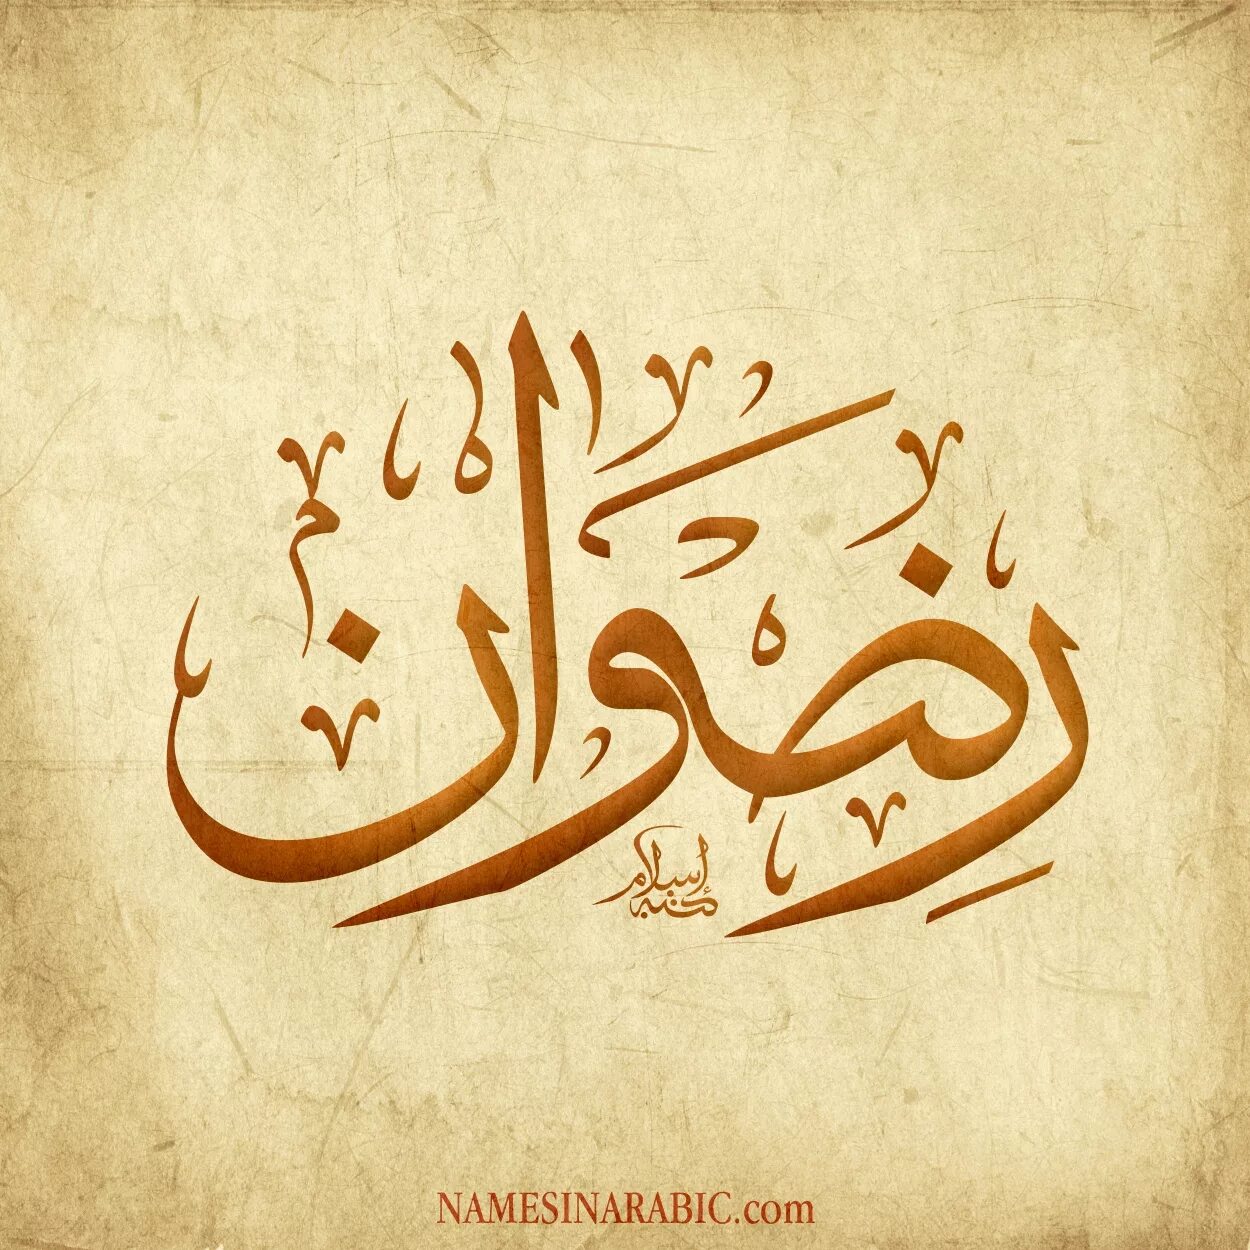 Арабский язык абу. АСАДУЛЛАХ на арабском. Имя АСАДУЛЛАХ. Имя АСАДУЛЛАХ на арабском.